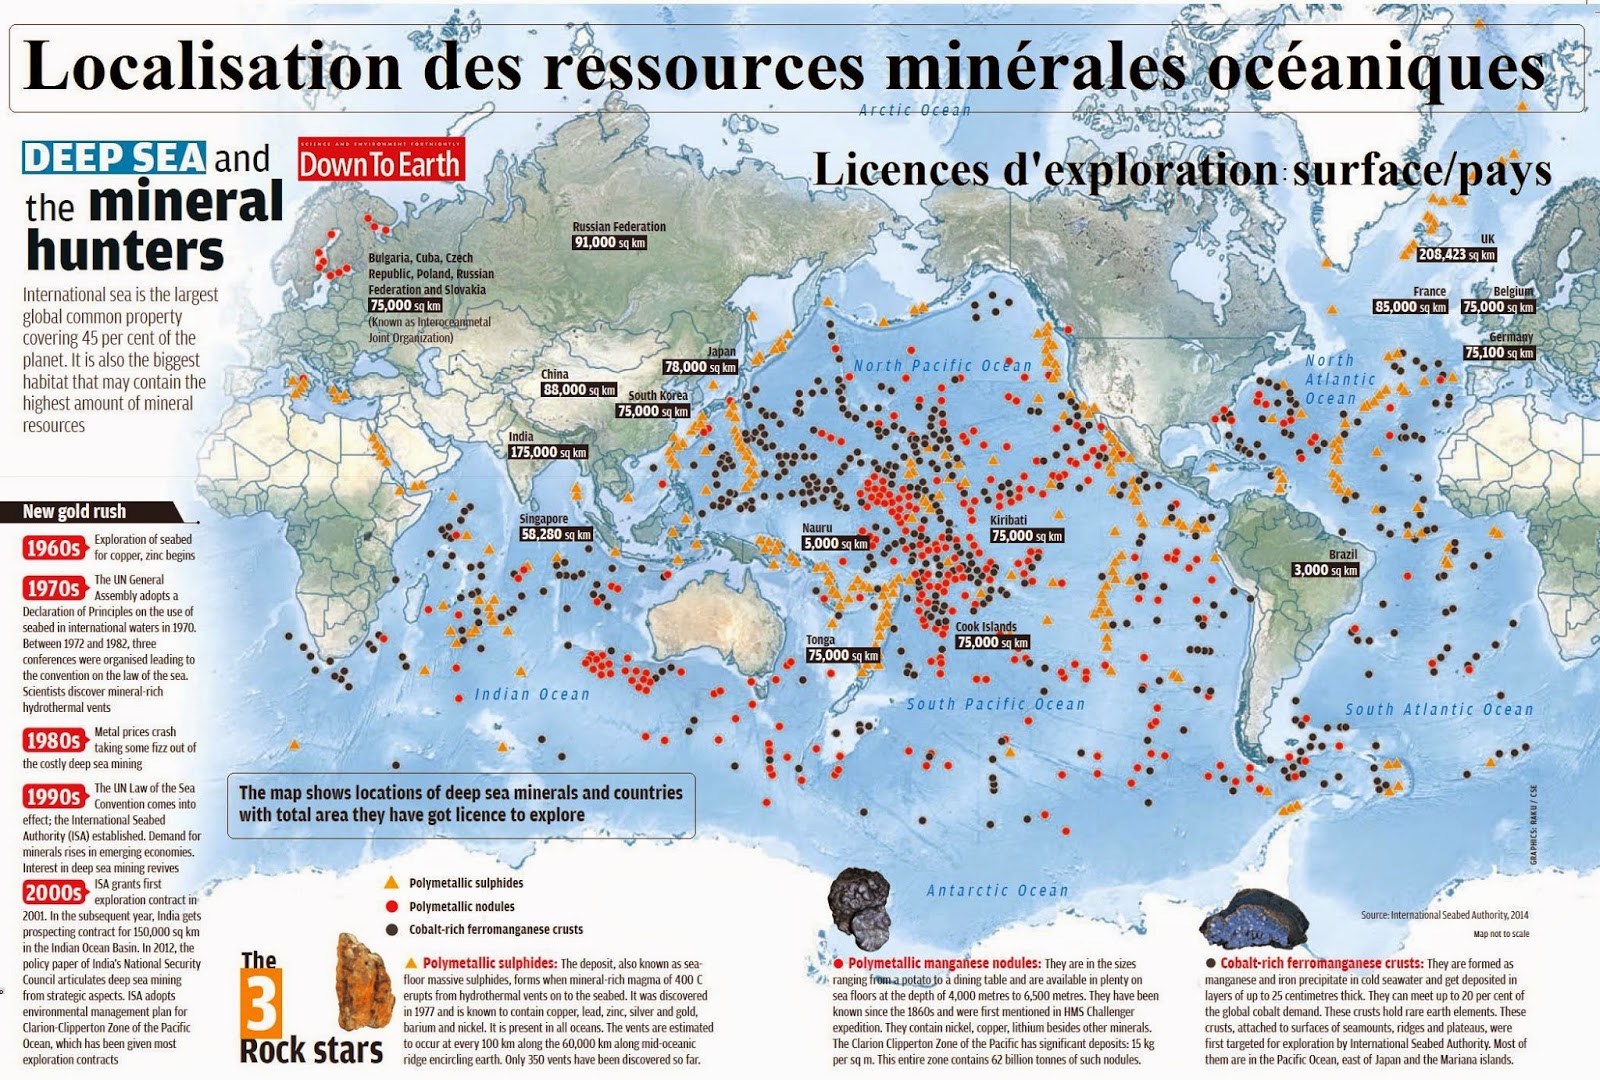 ressources minérales océan pacifique